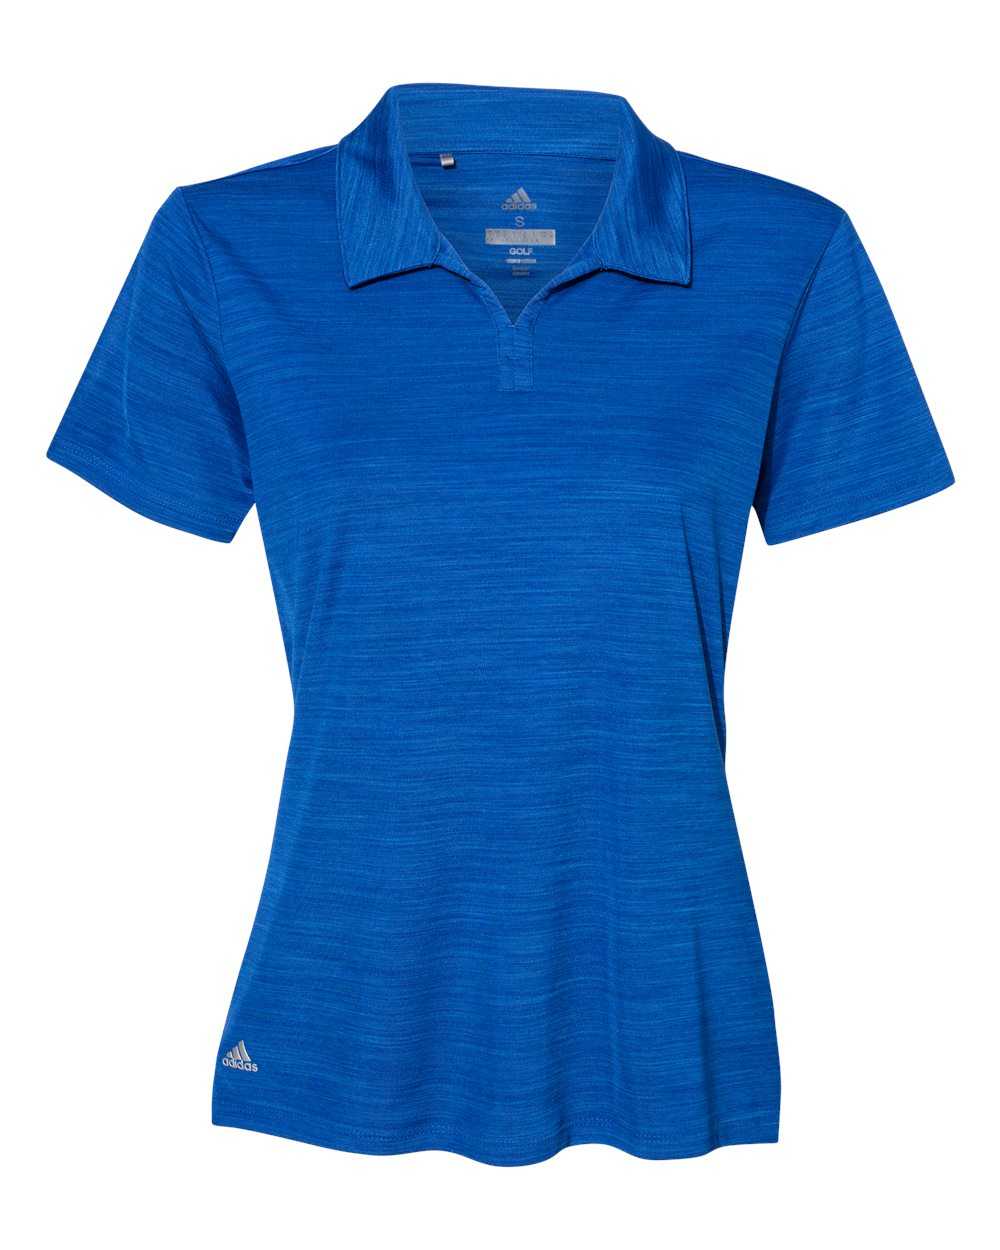 Adidas A403 Women's M??lange Sport Shirt - Collegiate Royal Melange - HIT a Double